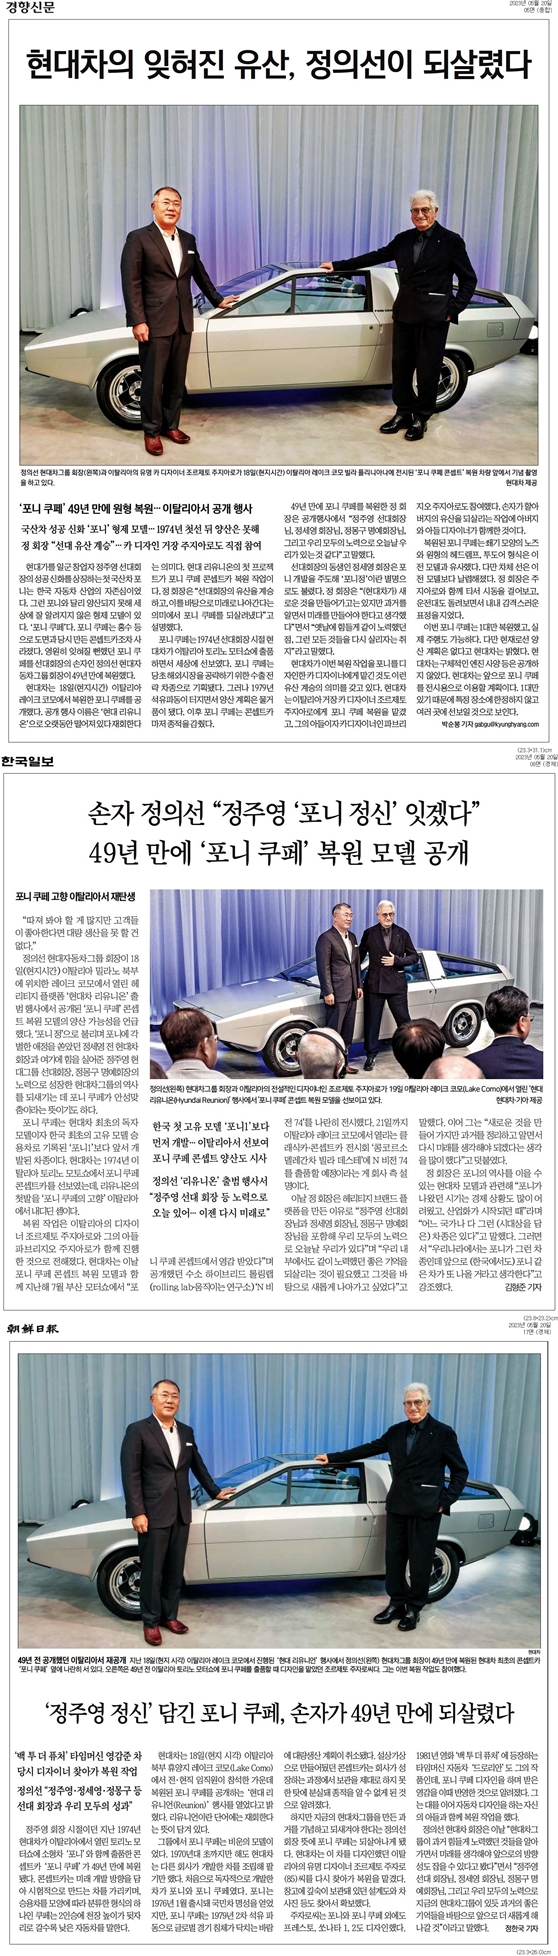 ▲  포니 쿠페 복원 소식을 다룬 경향신문, 한국일보, 조선일보 기사 갈무리